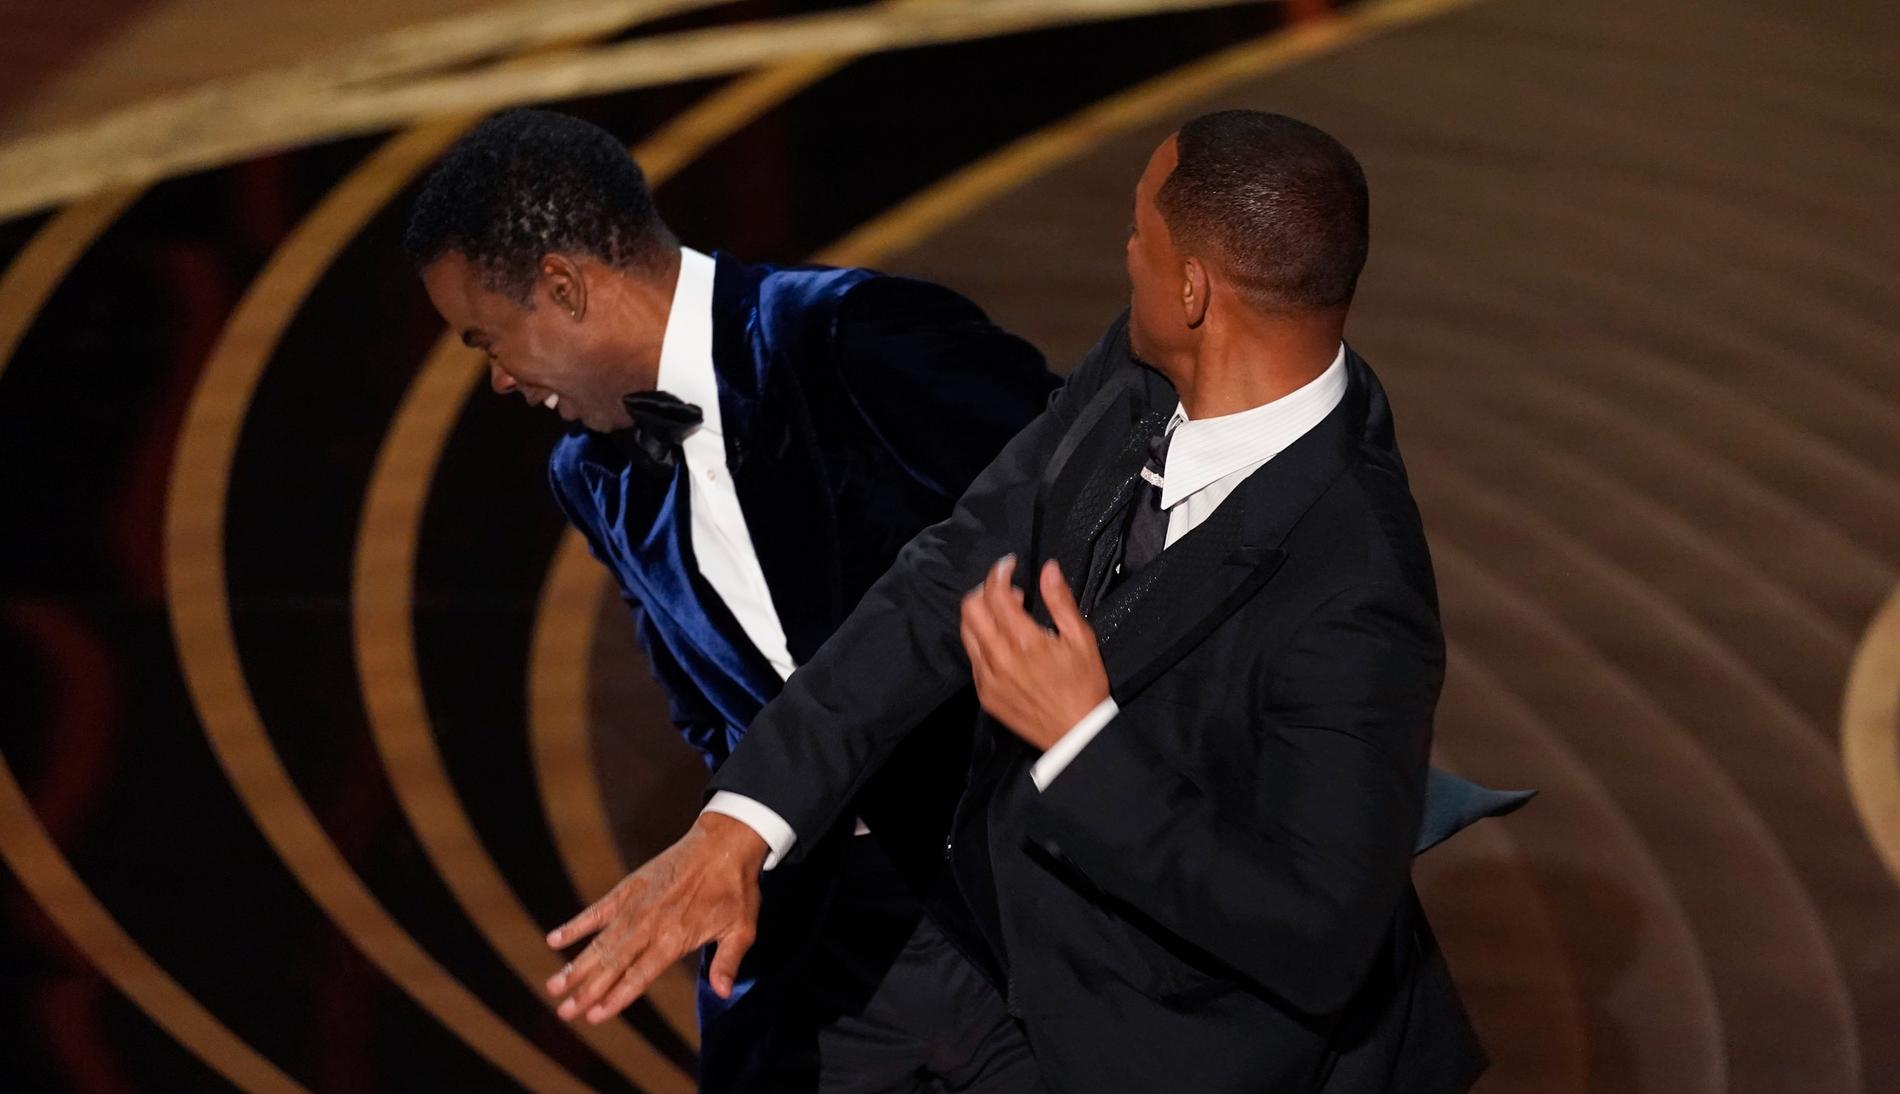 Will Smith rusade upp på scenen under Oscarsgalan och slog till komikern Chris Rock, som han menade hade förolämpat hans fru. 